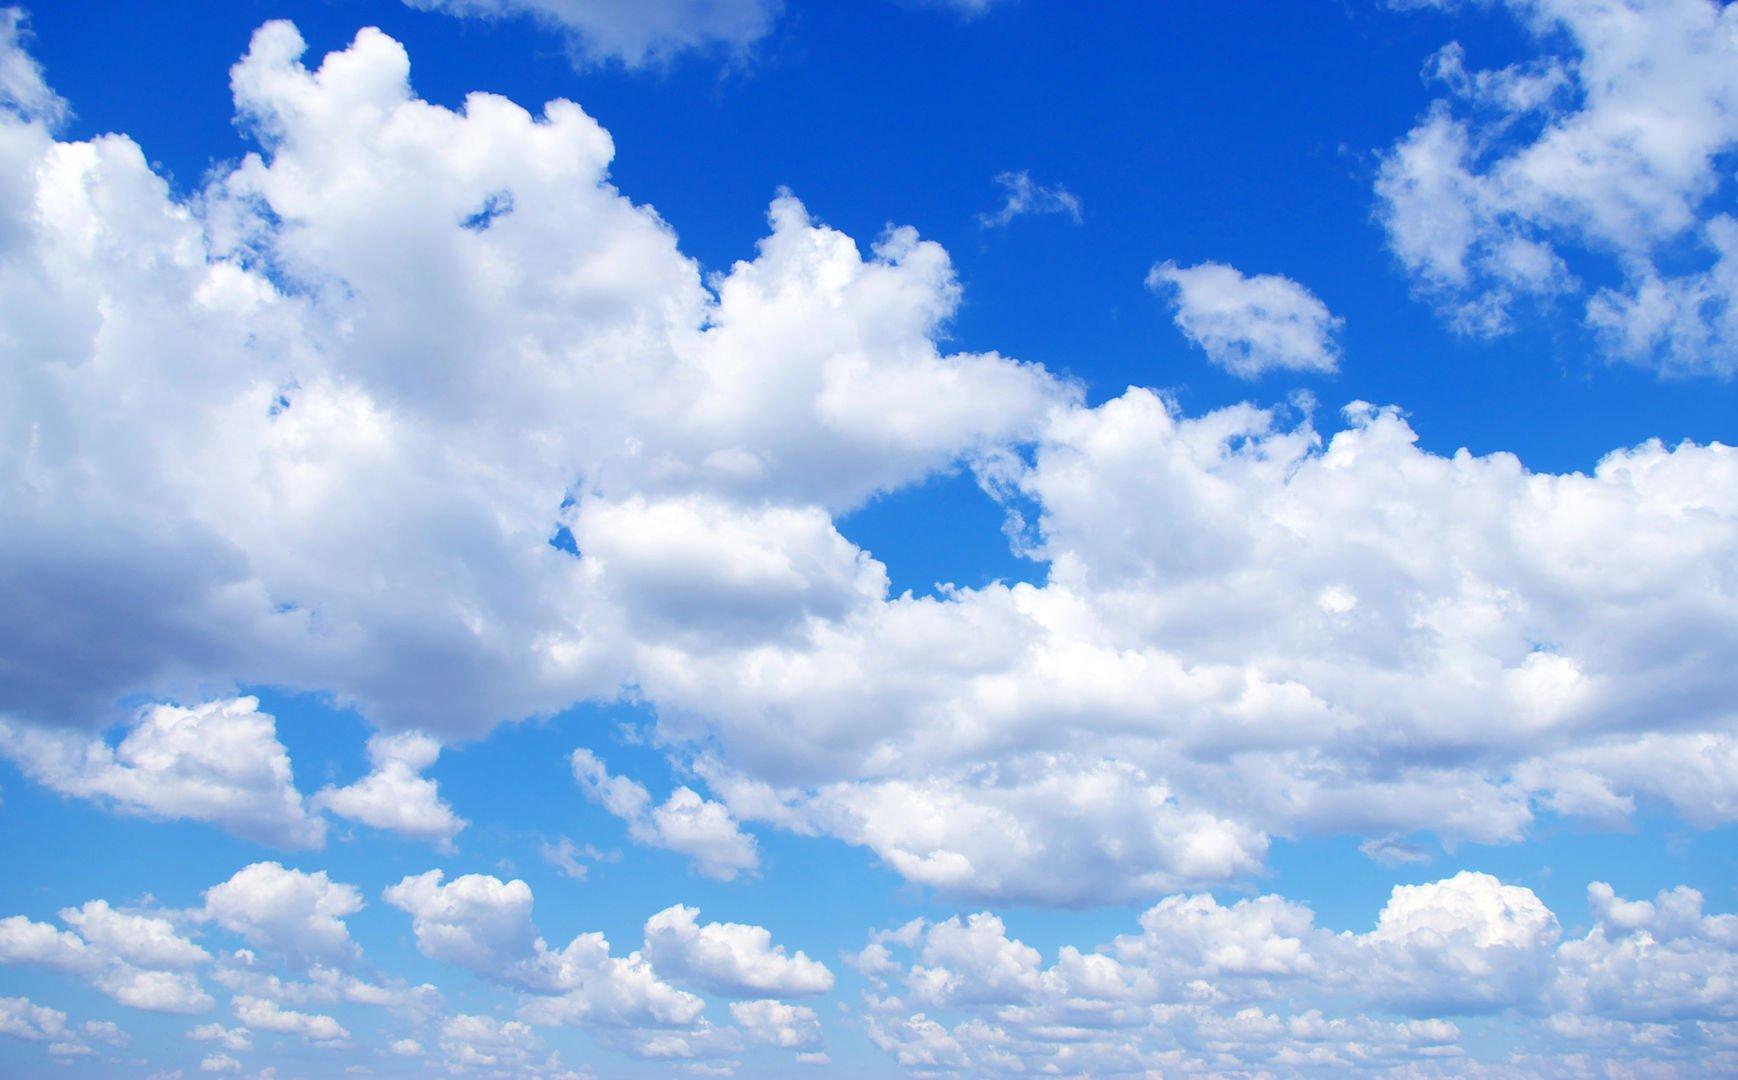 Слоисто-кучевые облака — Википедия